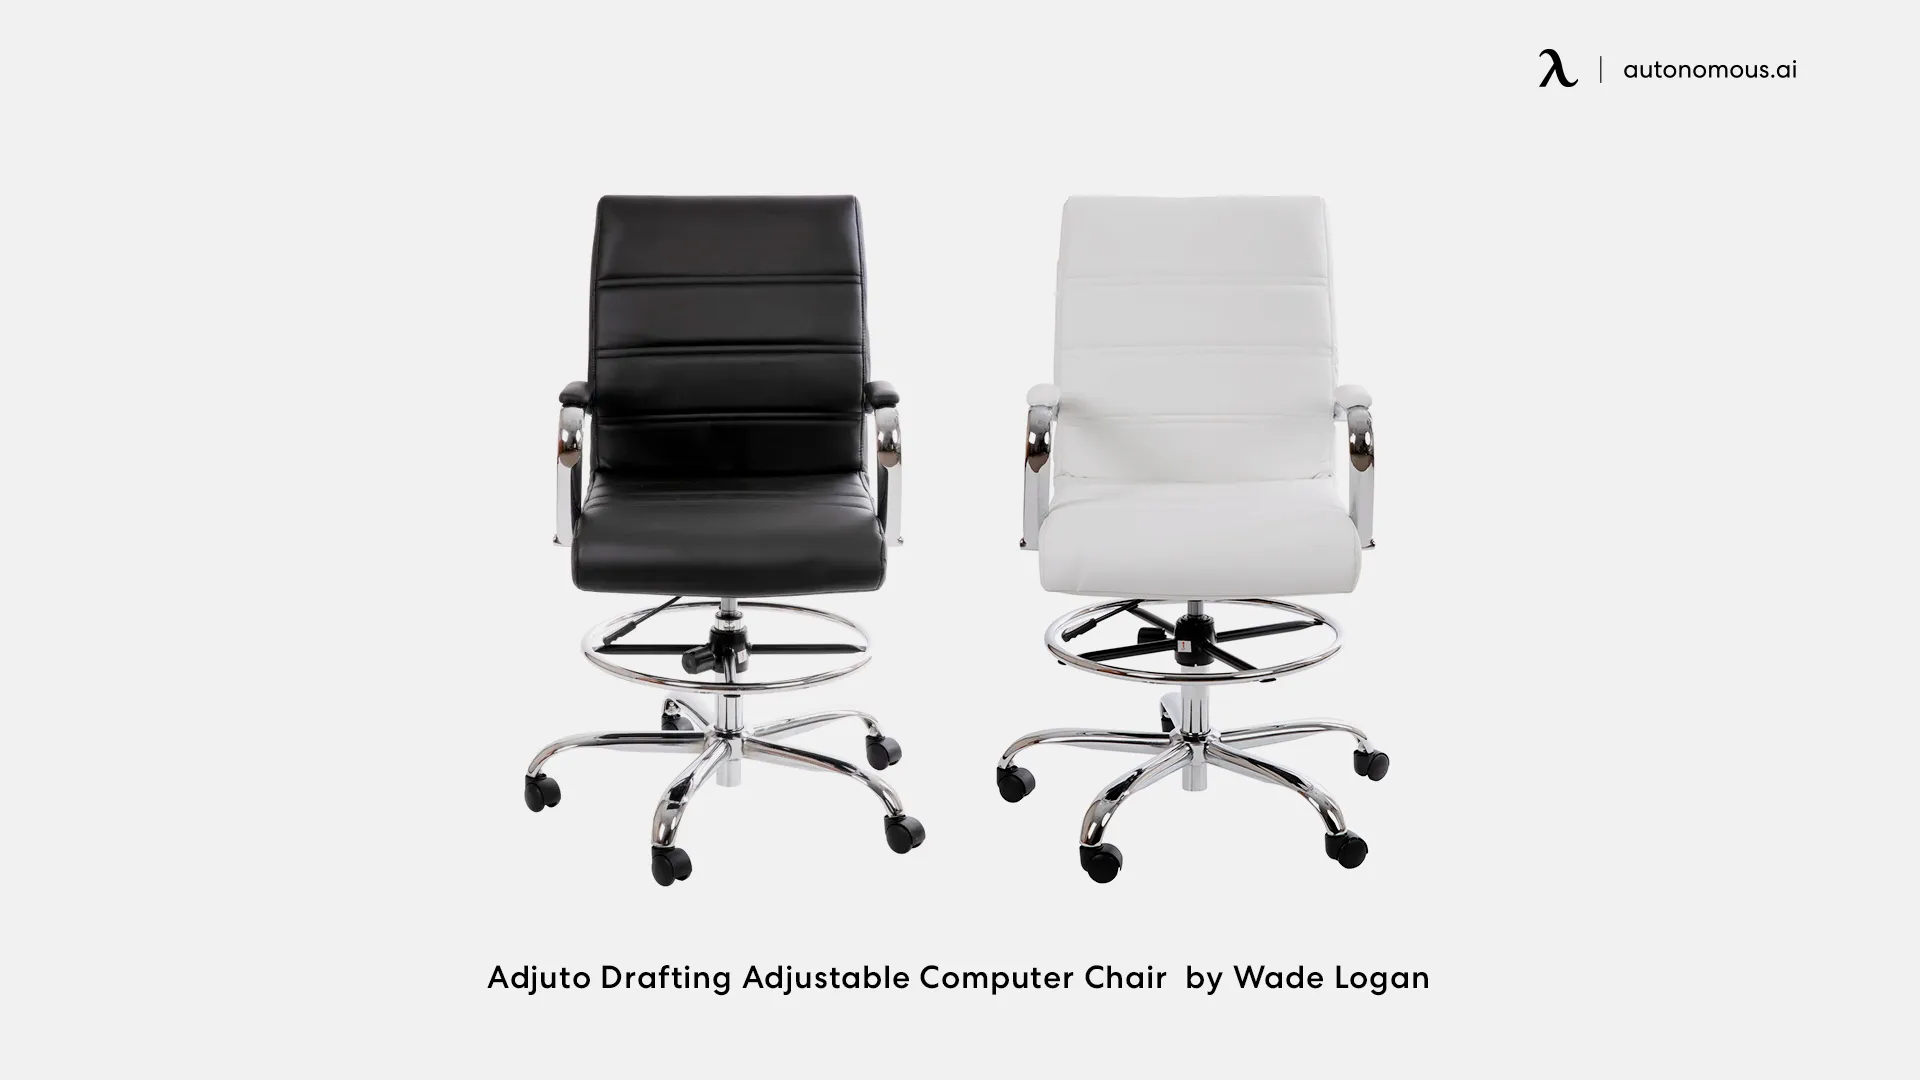 Adjuto Drafting Adjustable Computer Chair